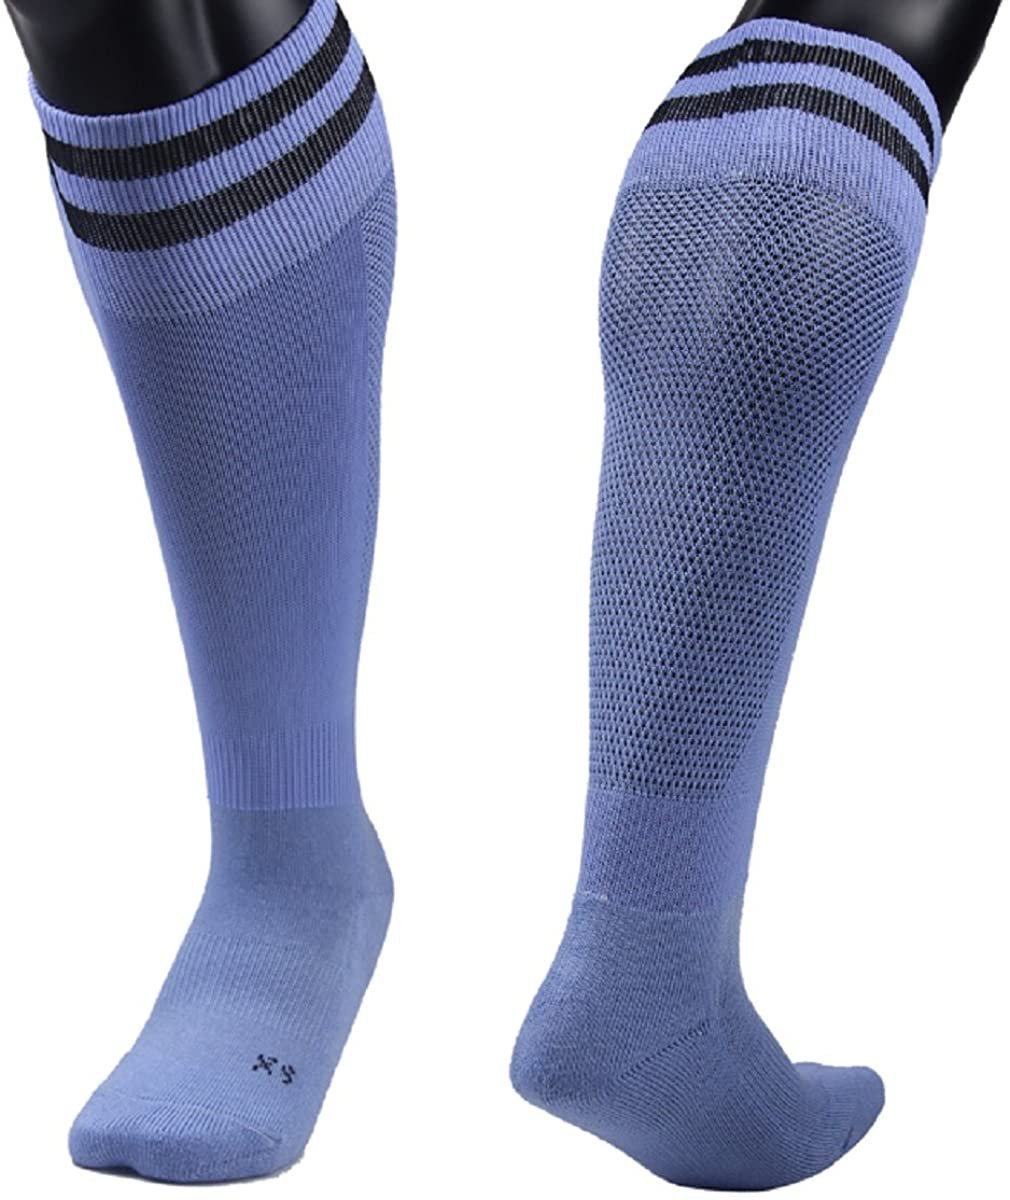 Lian Style Big Boys' 1 Pair Knee Length Sports Socks for Baseball/Soccer/Lacrosse XL003 M(Light Blue)